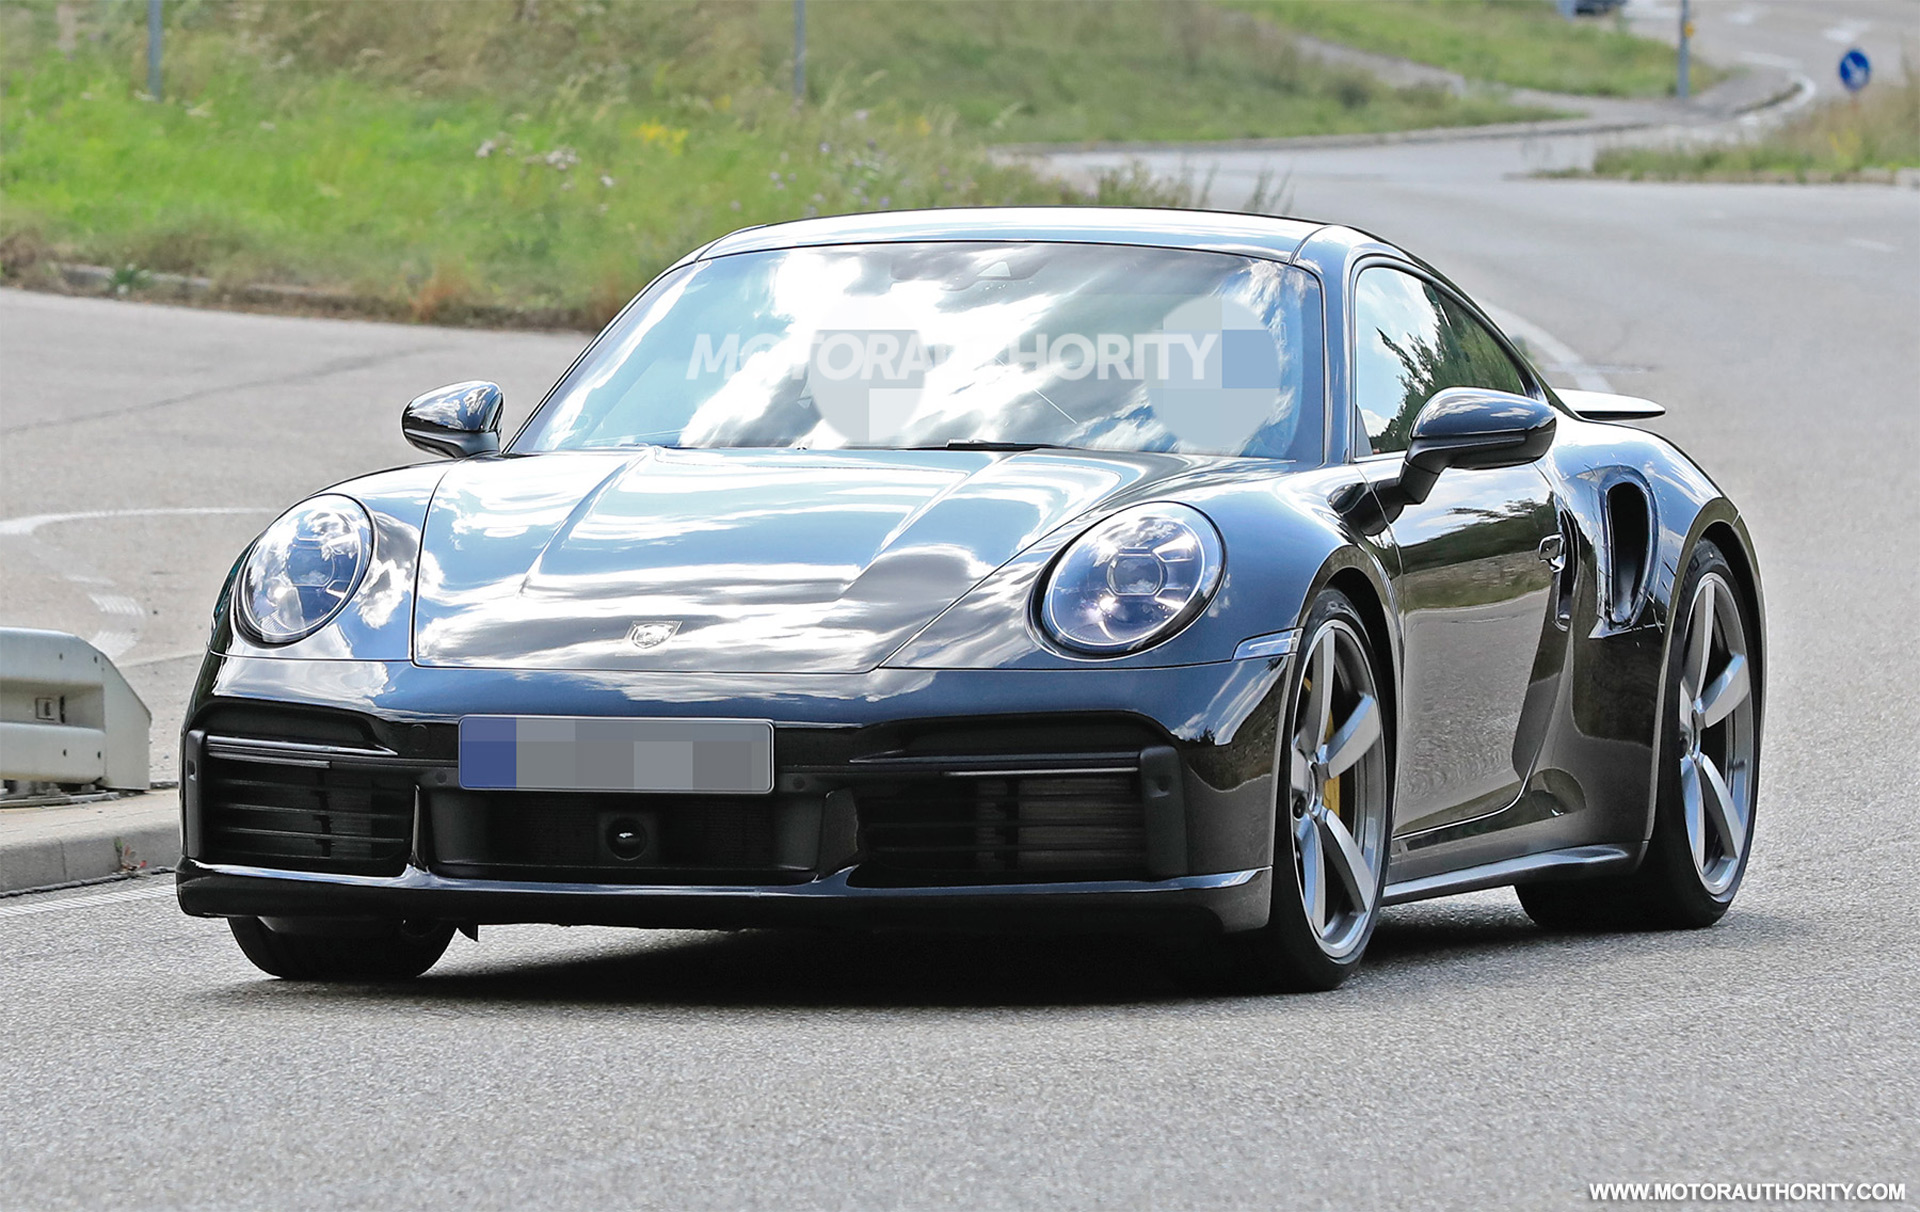 Хардкорные версии Porsche 911 - Turbo и Turbo S